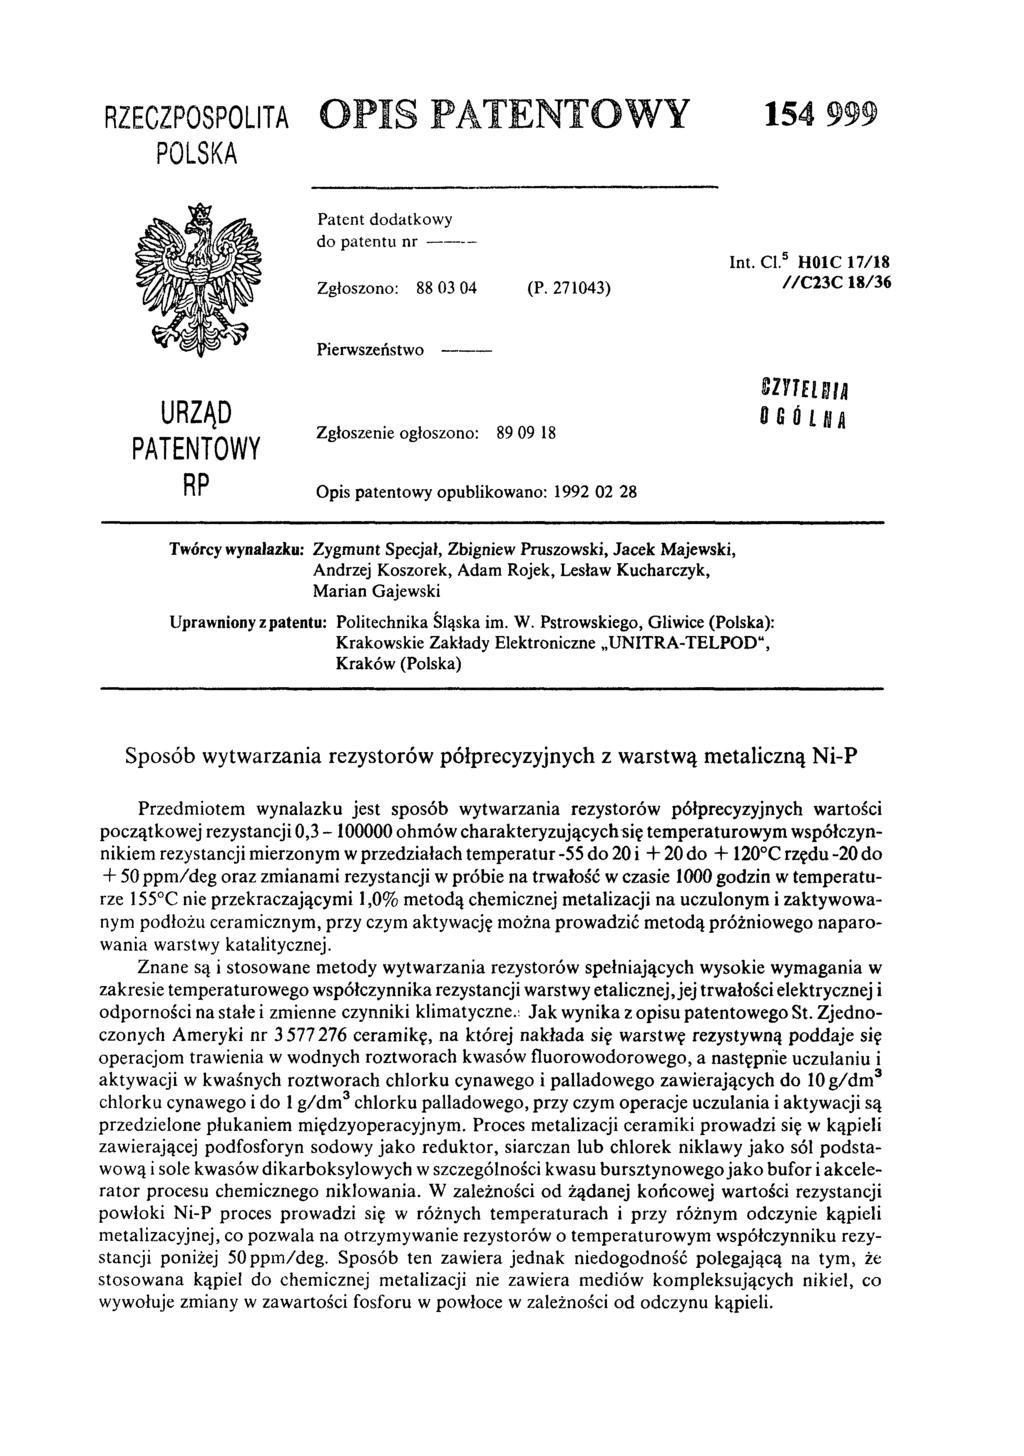 RZECZPOSPOLITA POLSKA OPIS PATENTOWY 154 999 Patent dodatkowy do patentu n r - - - Zgłoszono: 88 03 04 (P. 271043) Int. Cl.